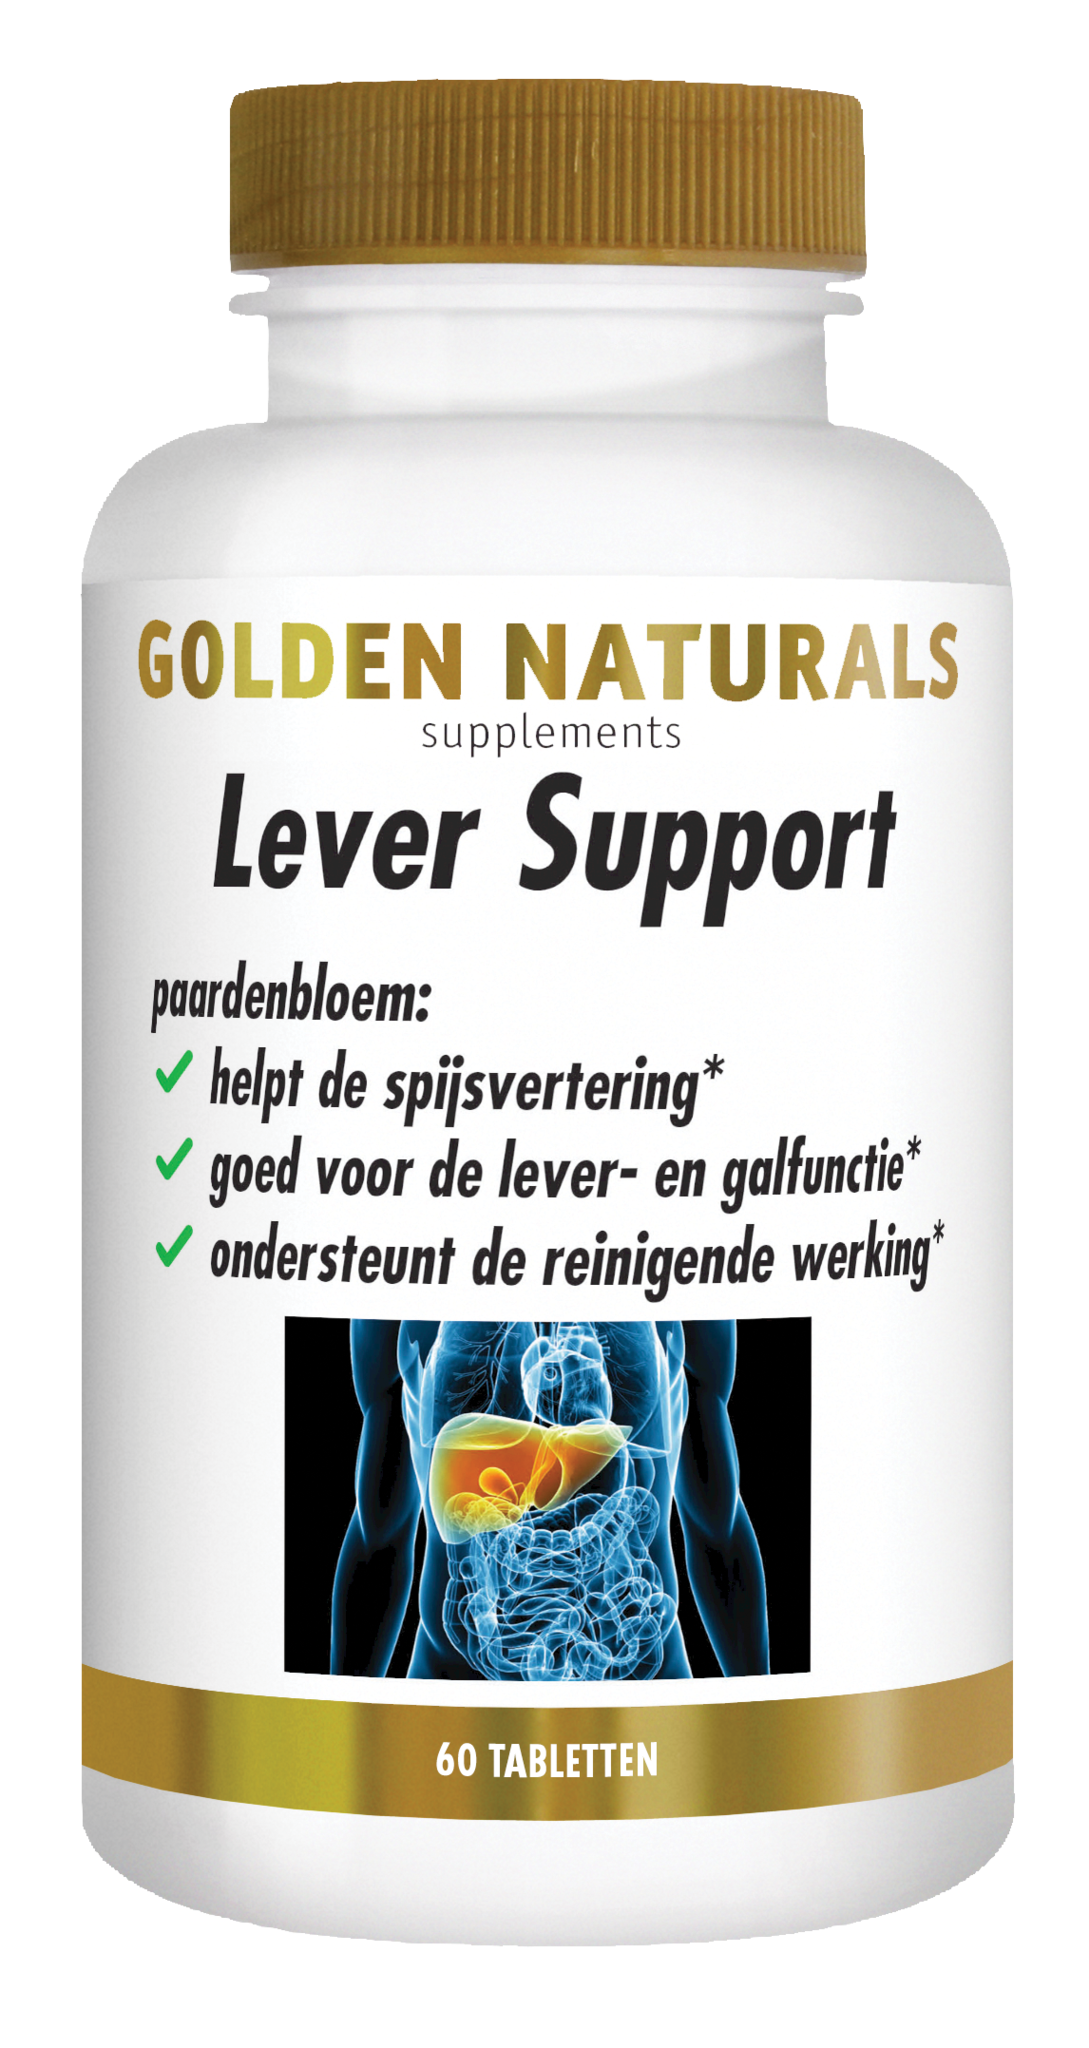 Golden Naturals Golden Naturals Lieferunterstützung (60 Tablets)